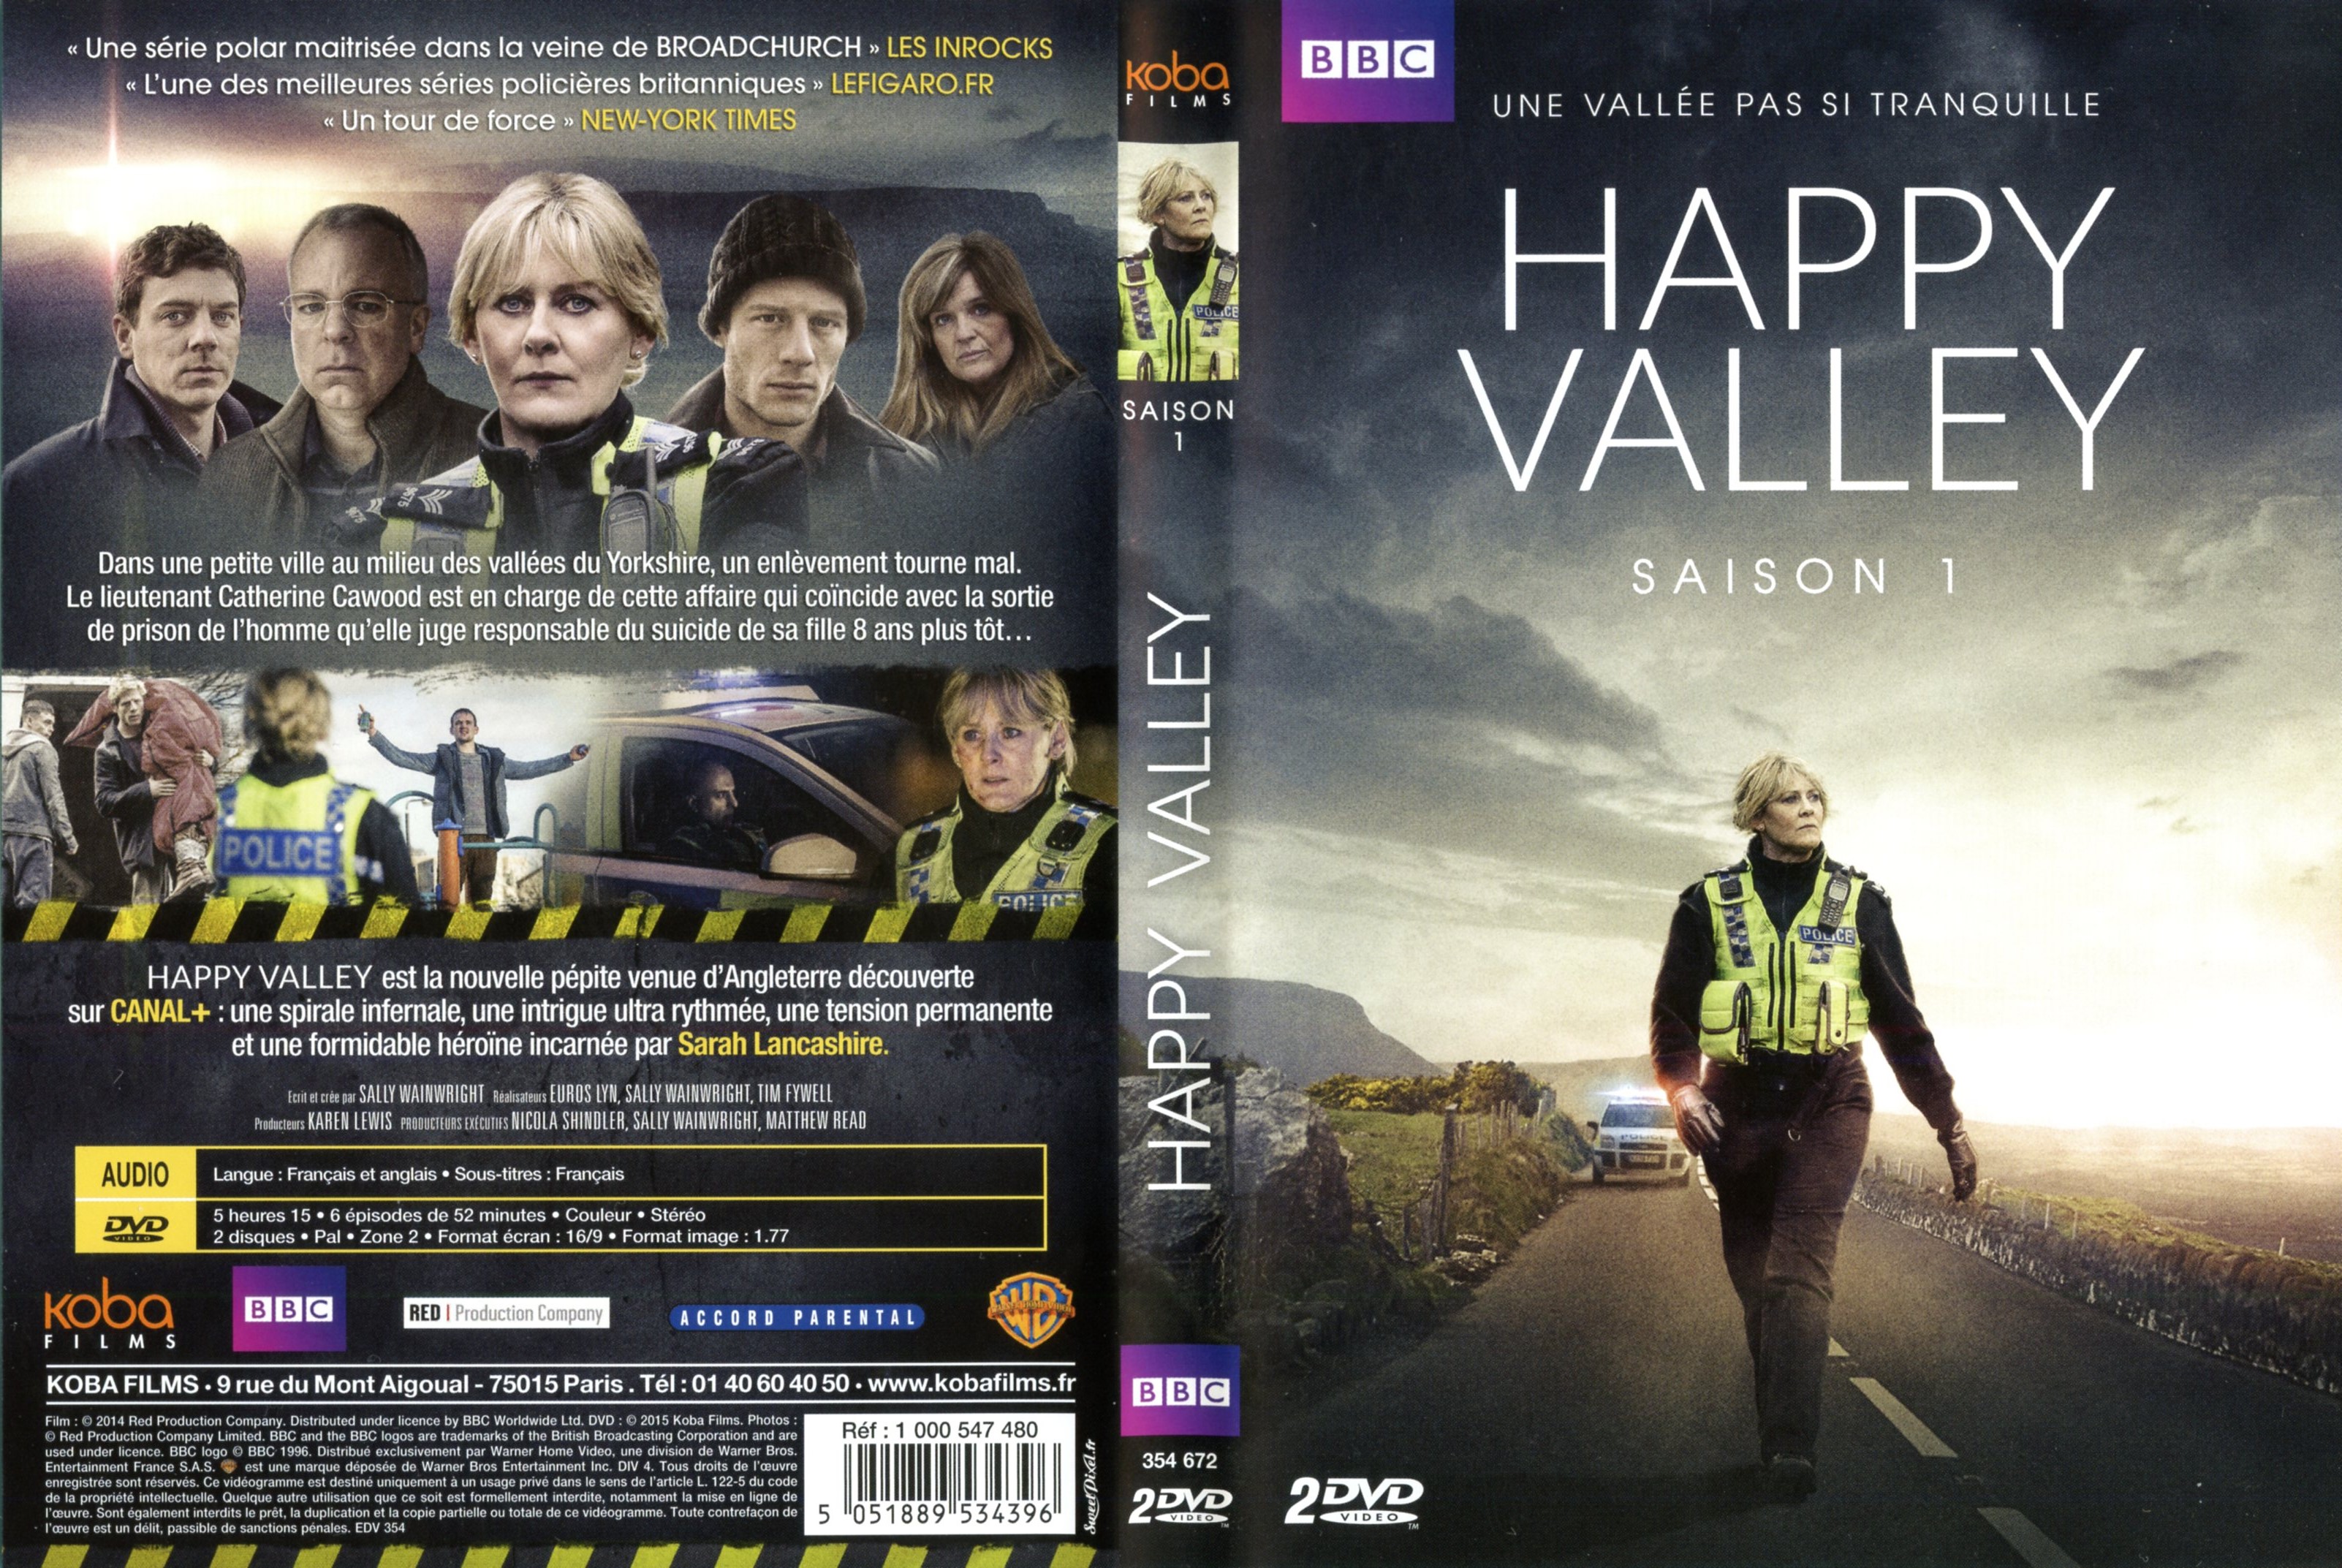 Jaquette DVD Happy valley Saison 1